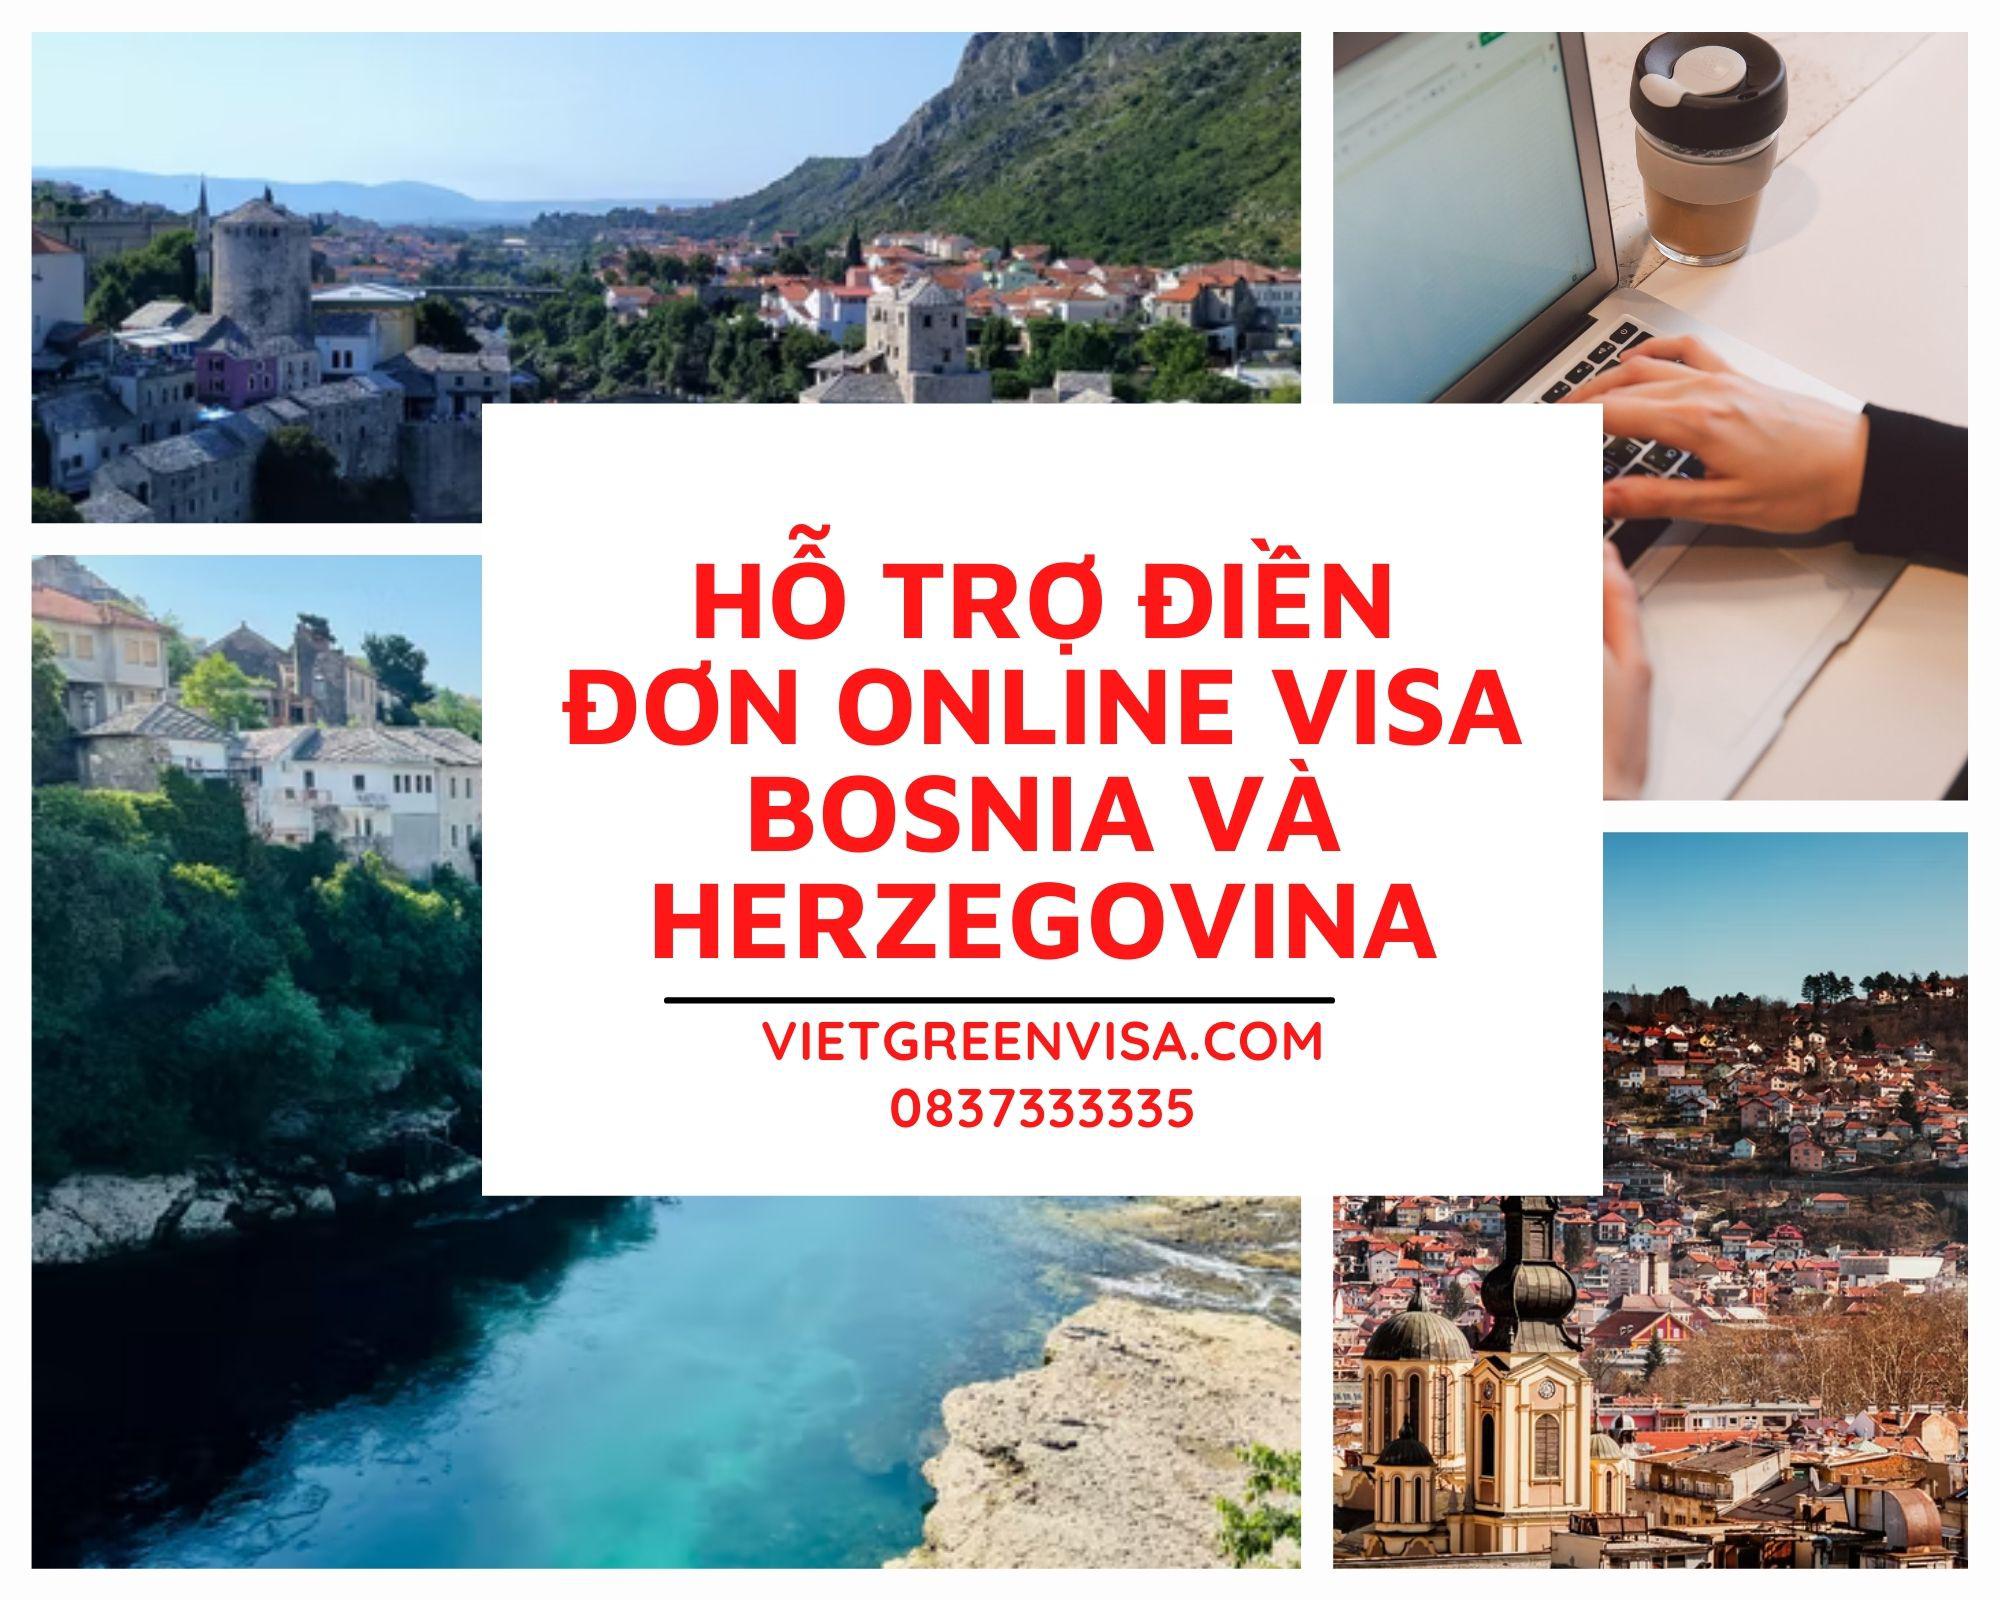 Dịch vụ điền đơn visa Bosnia và Herzegovina online nhanh